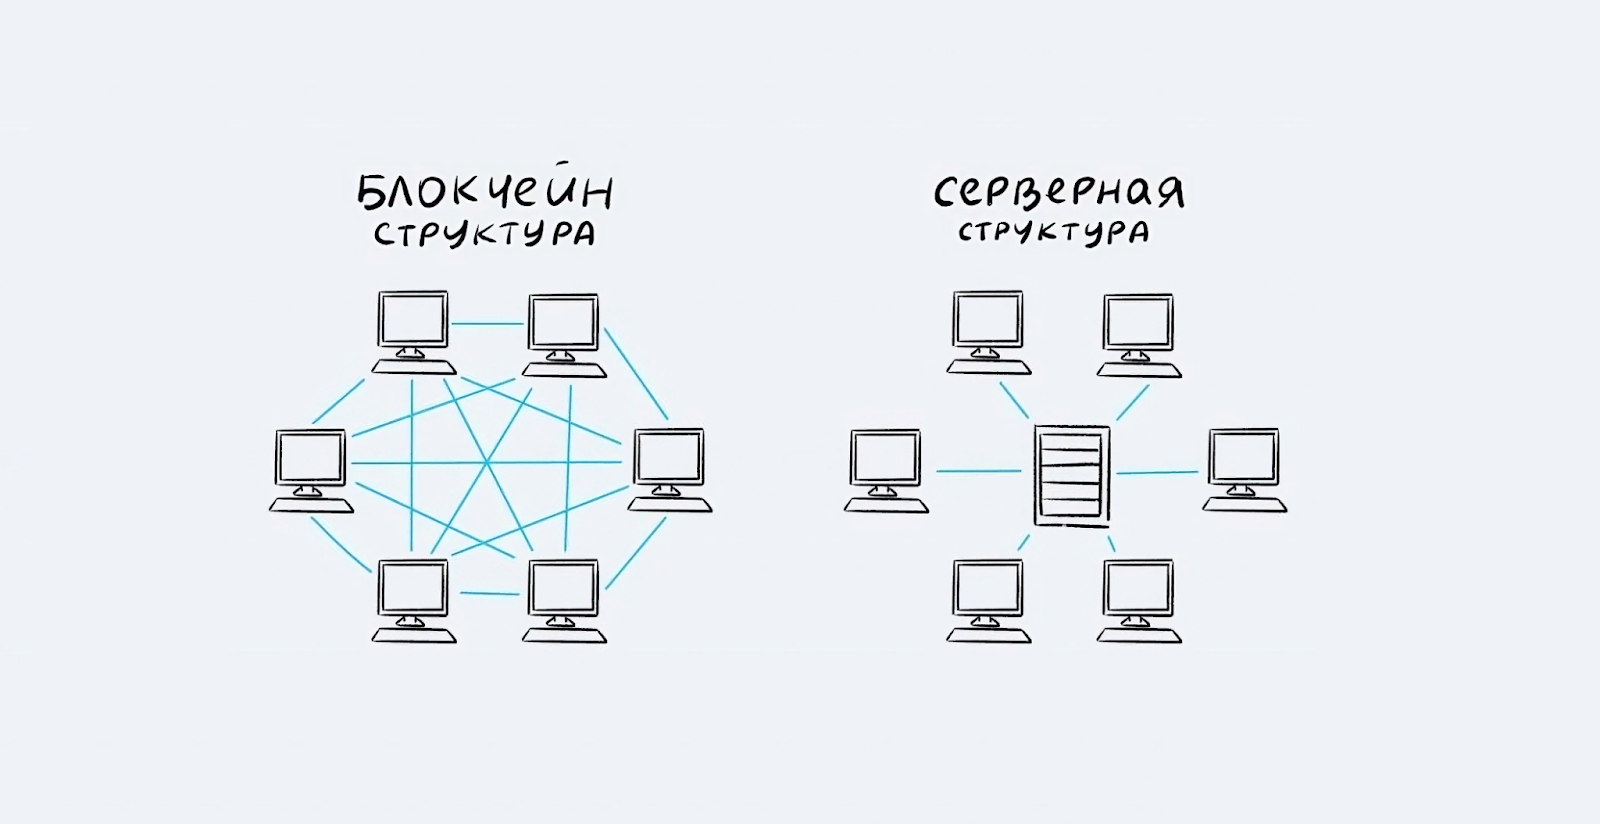 Схема отличия блокчейн структуры от серверной структуры